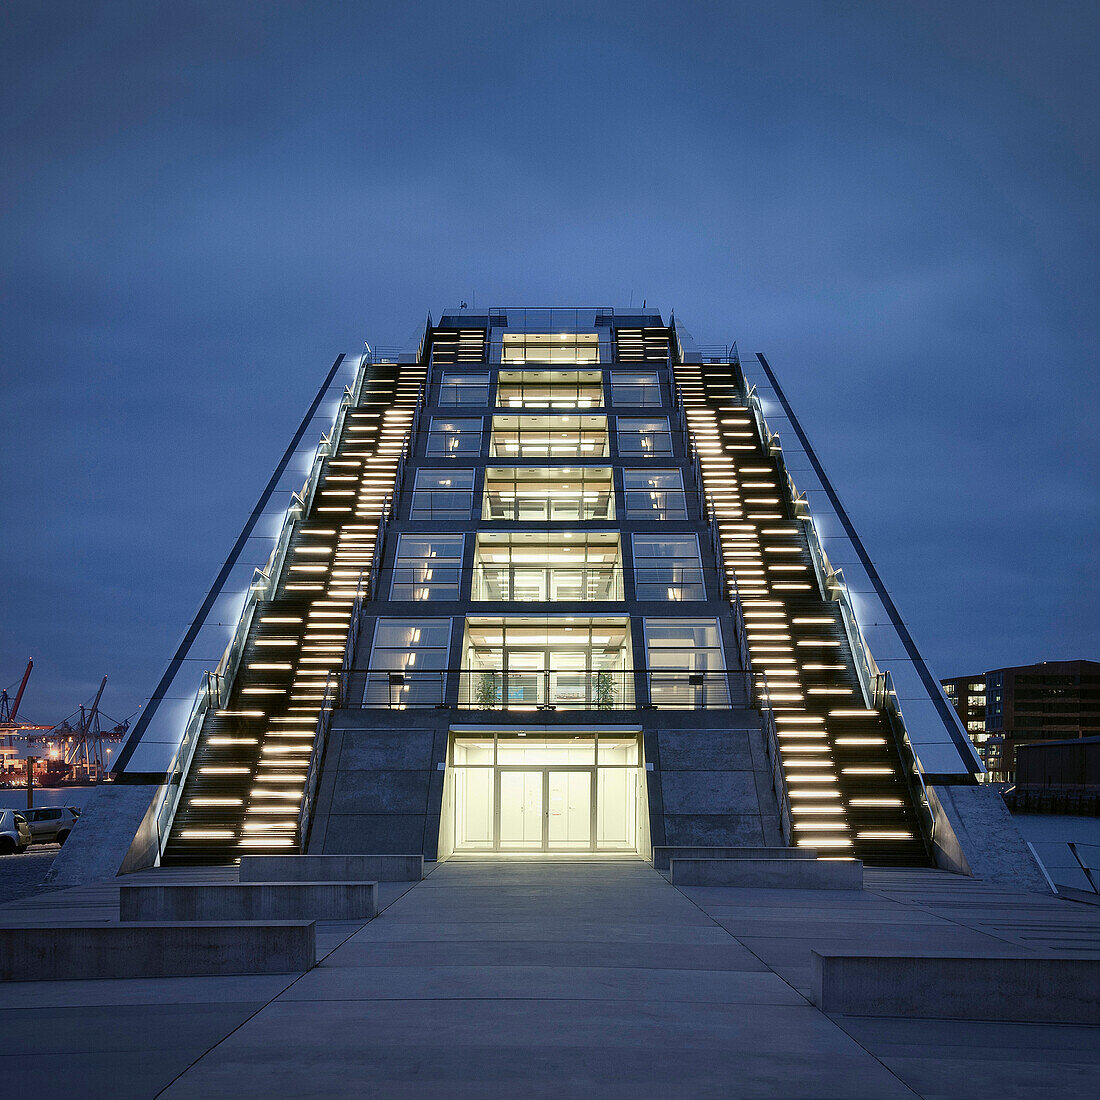 Treppenaufgang zum Bürogebäude Docklands beim Hamburger Hafen, Hamburg, Elbe, Deutschland, Europa